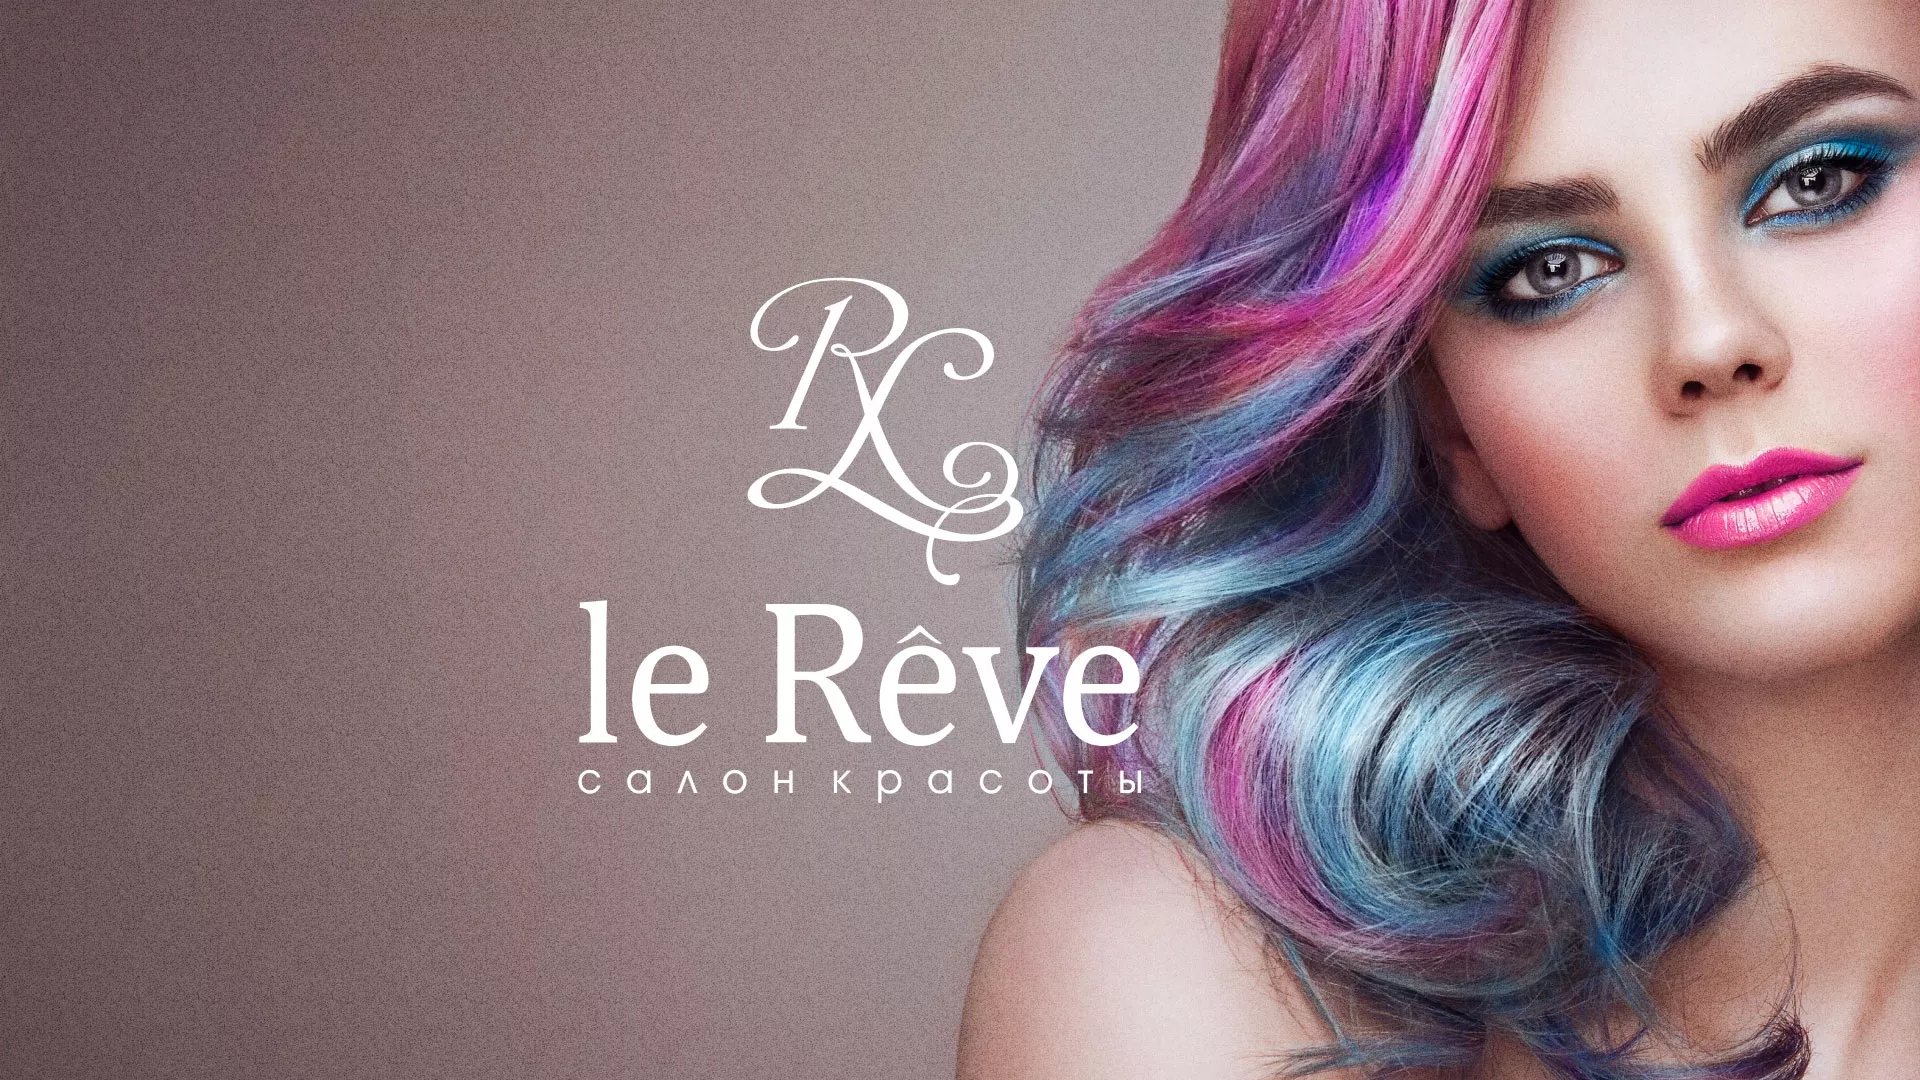 Создание сайта для салона красоты «Le Reve» в Магадане